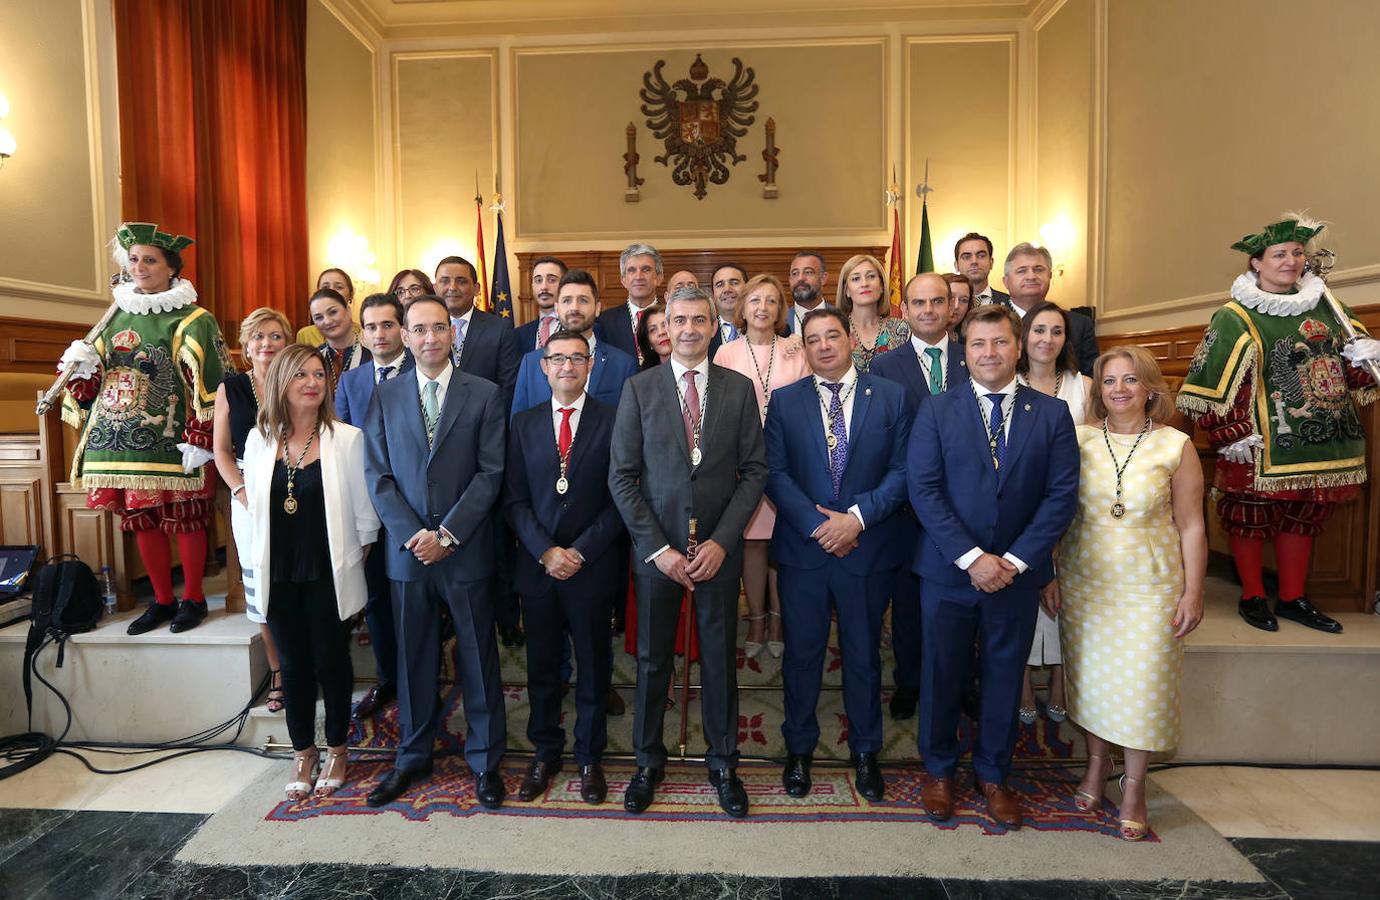 Gutiérrez toma posesión como presidente de la Diputación de Toledo